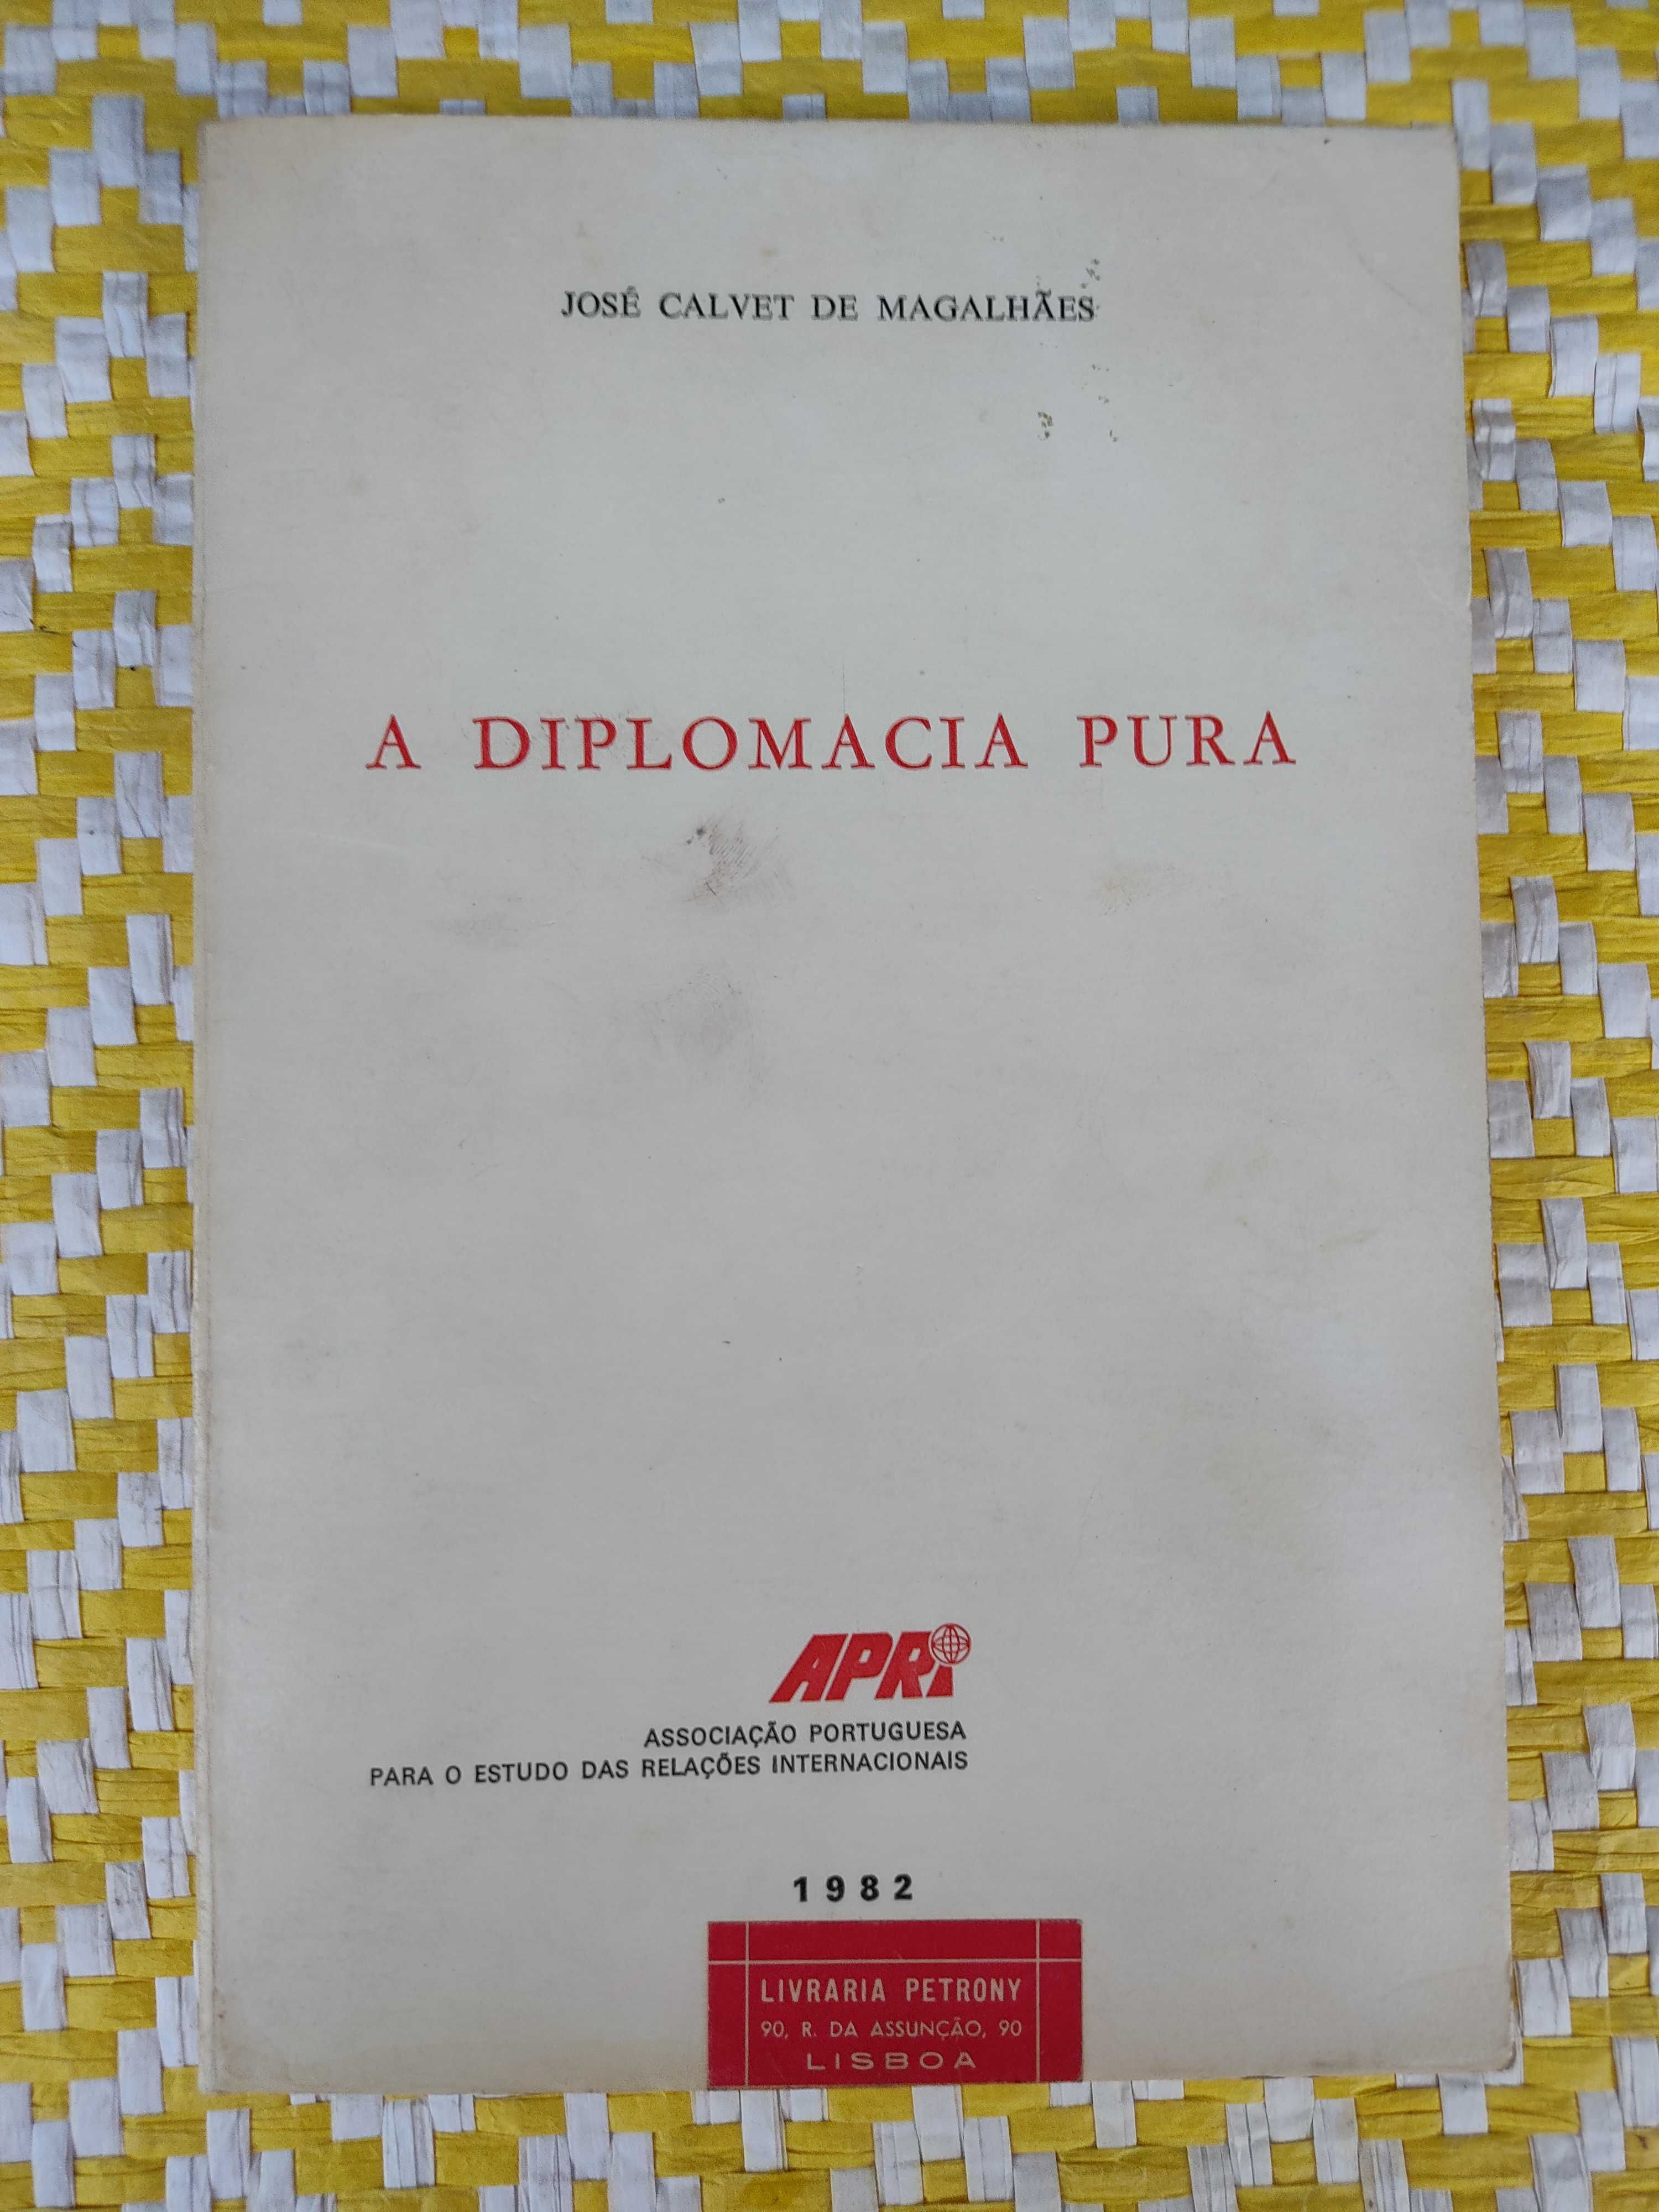 A DIPLOMACIA PURA 
José Calvet de Magalhães